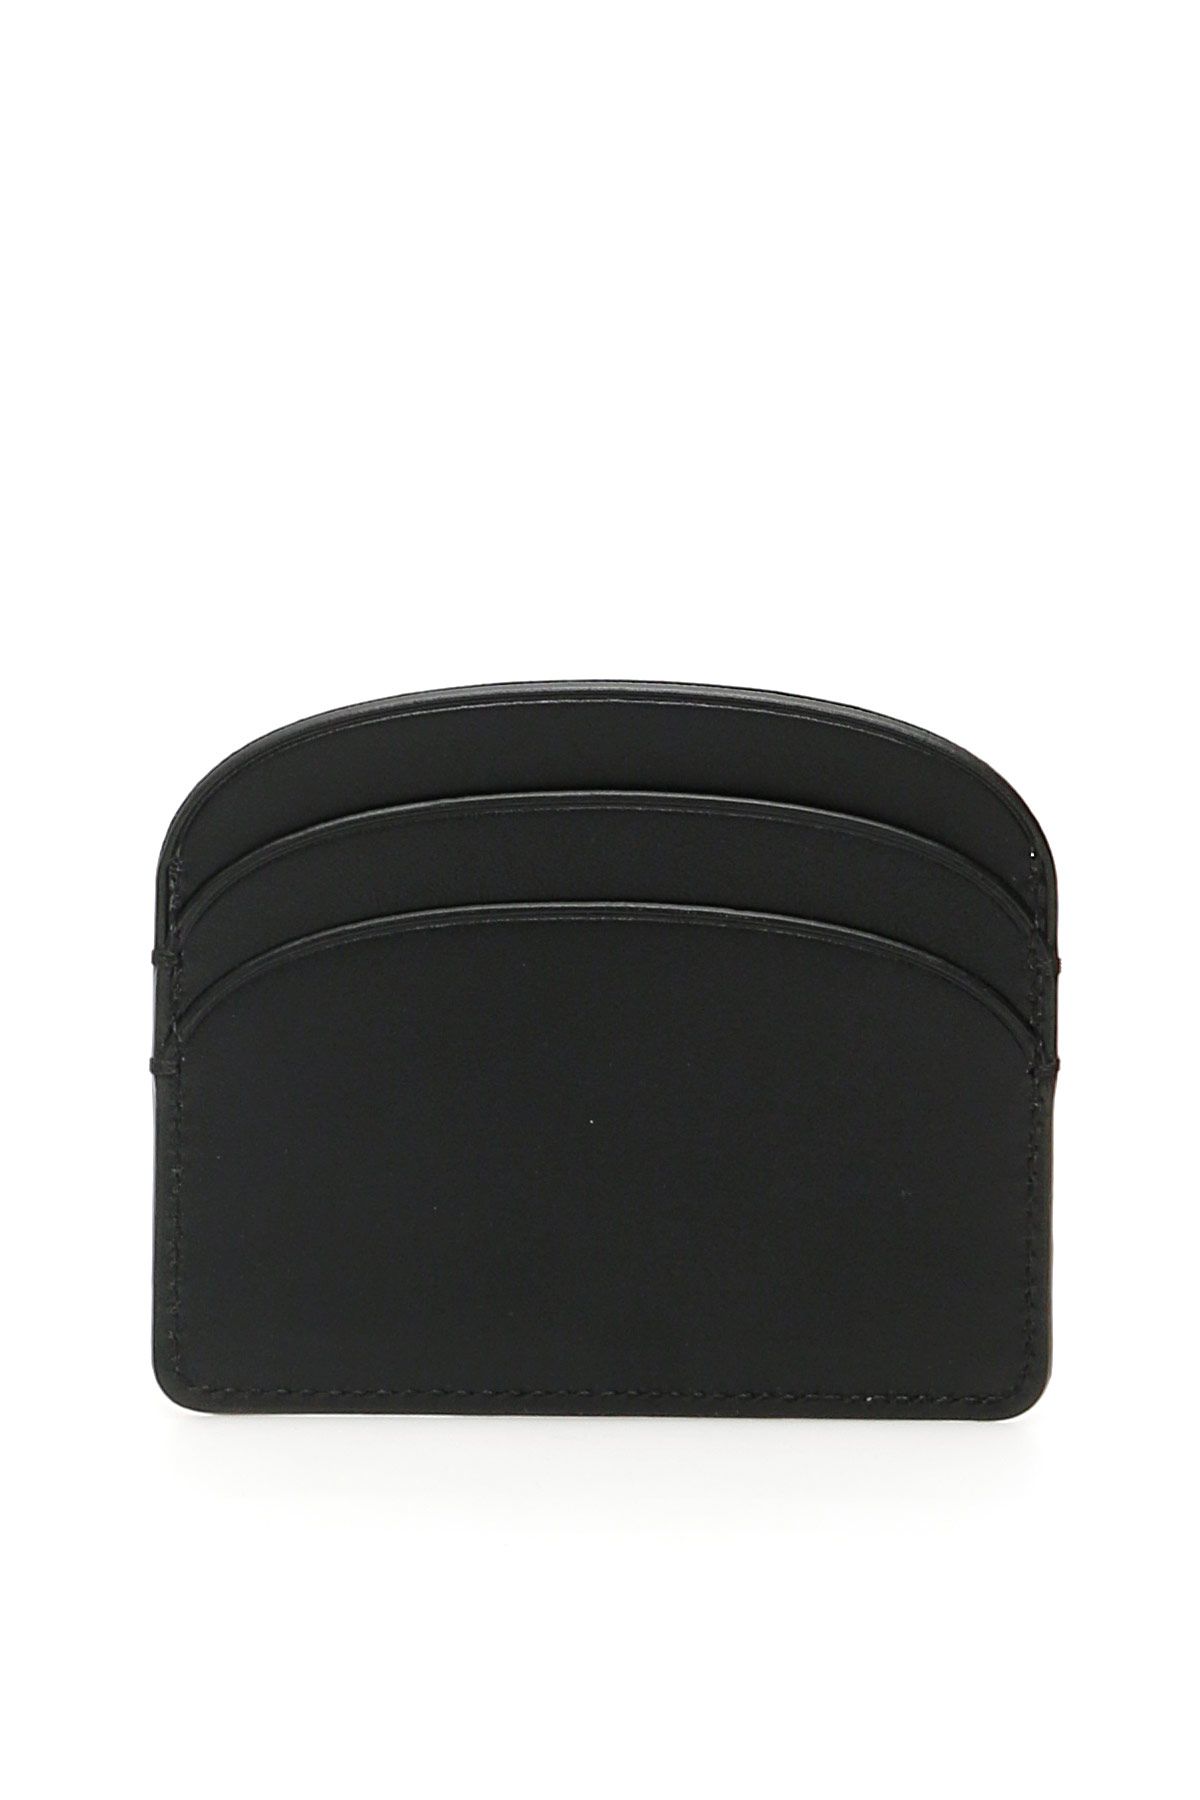 Shop Apc Demi-lune Card Holder In Black